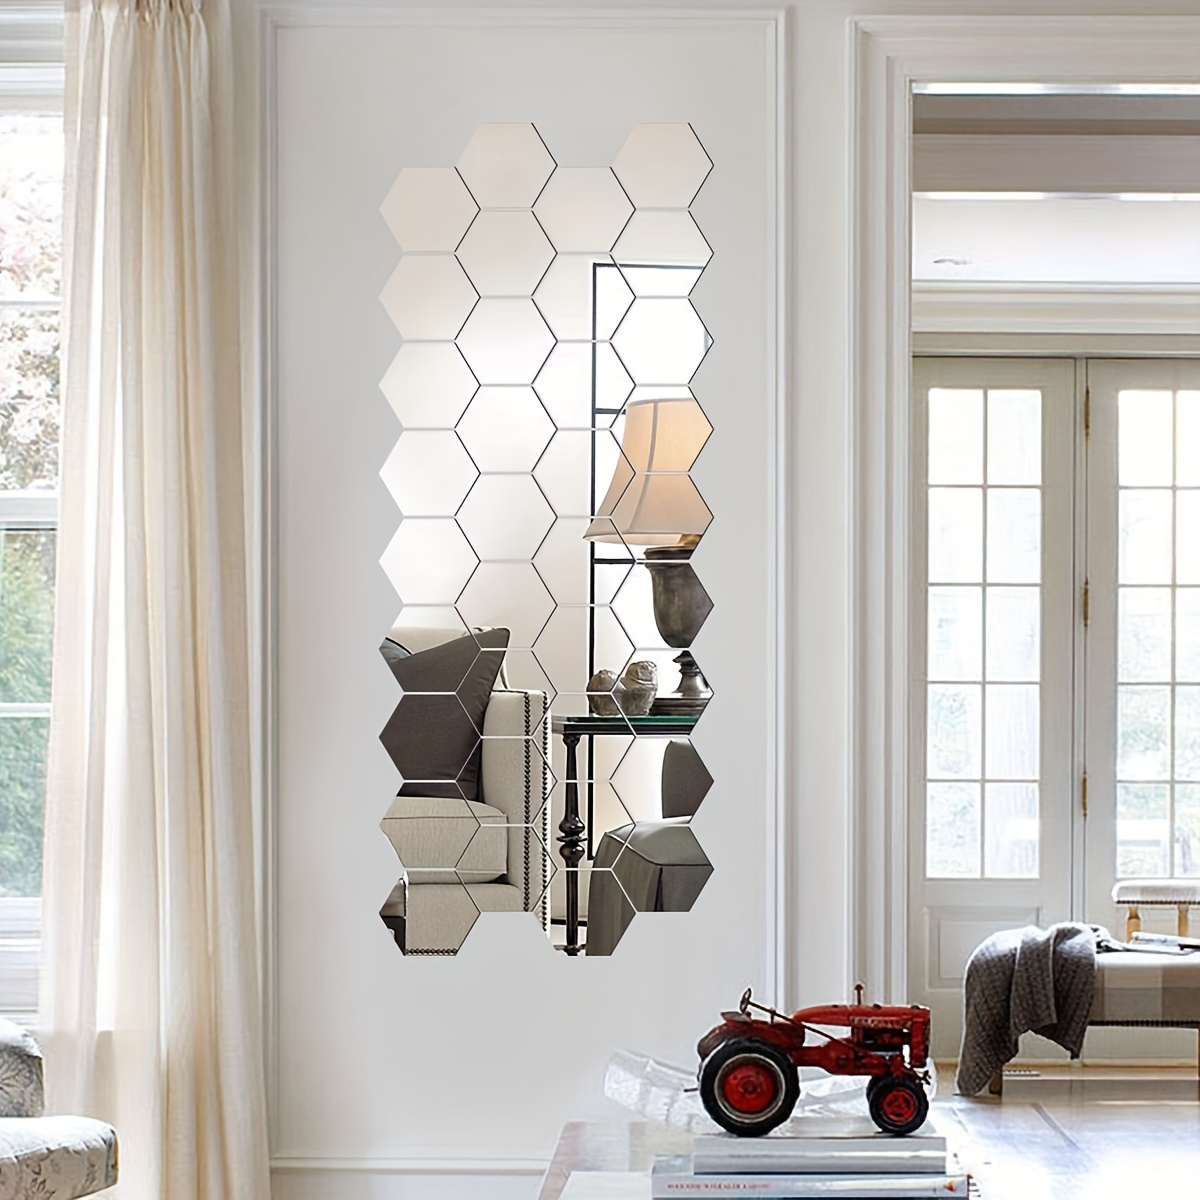 24*3D Hexagon Mirror Wall Sticker Art Tile Decal Home Living Room Decor